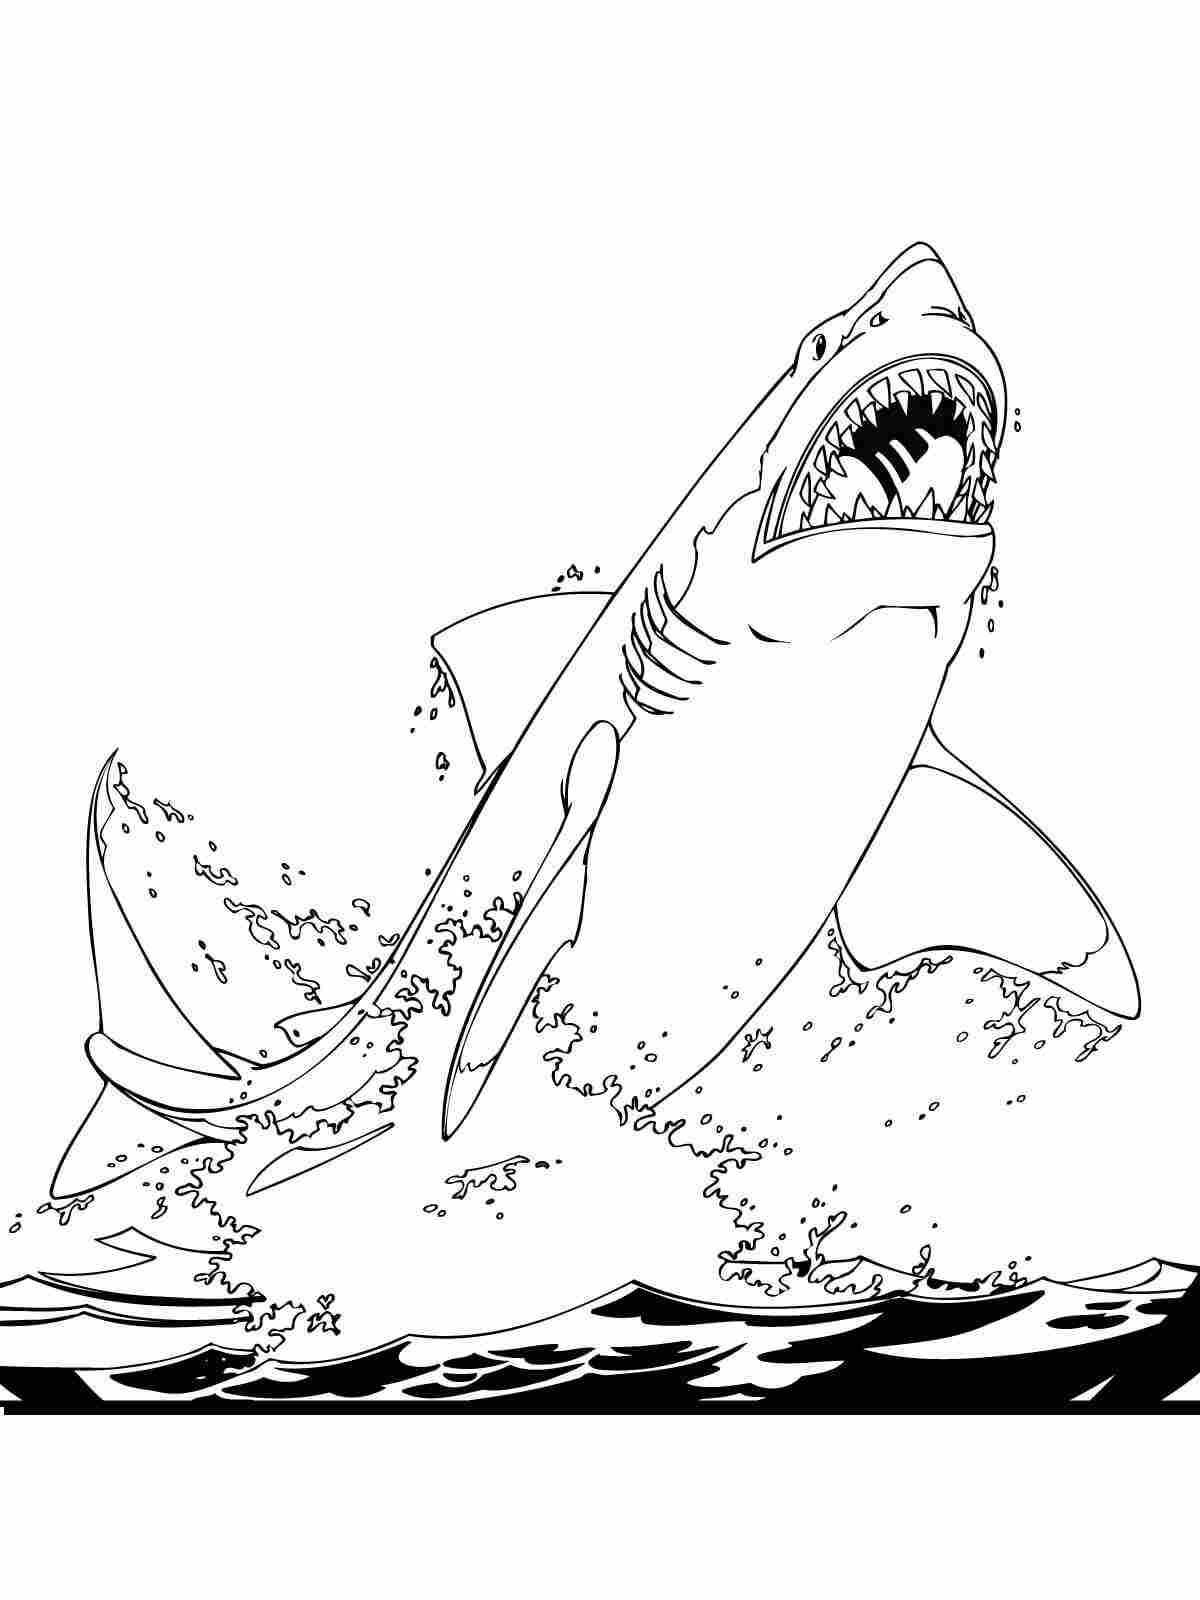 Der Weiße Hai springt von Shark aus dem Wasser